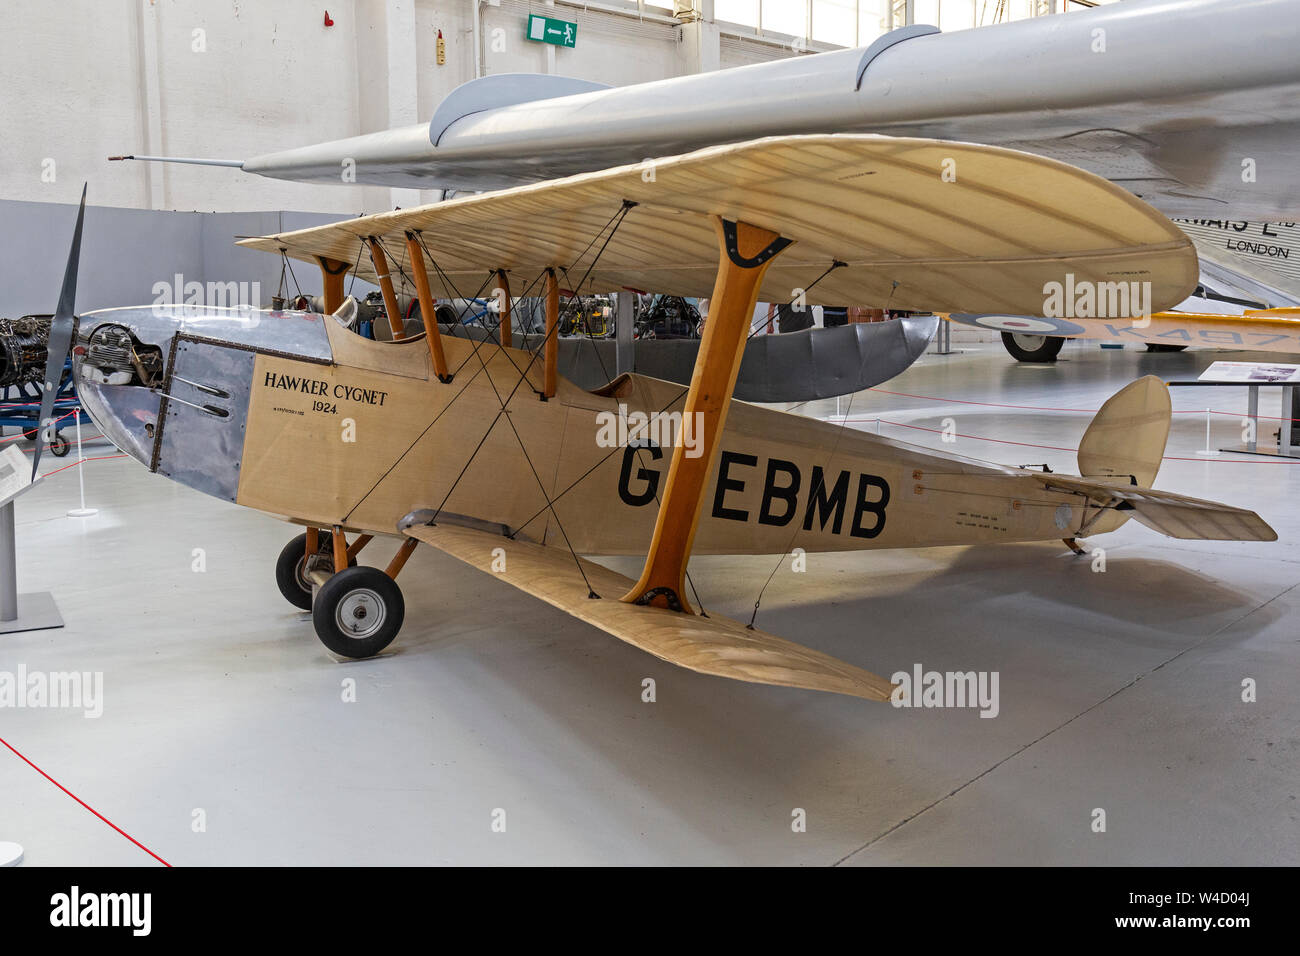 Hawker Cygnet, numéro de série G-EBMB, à l'affiche au Musée de la RAF à Gosford, en Angleterre. Construit en 1924. Biplan britannique. Banque D'Images